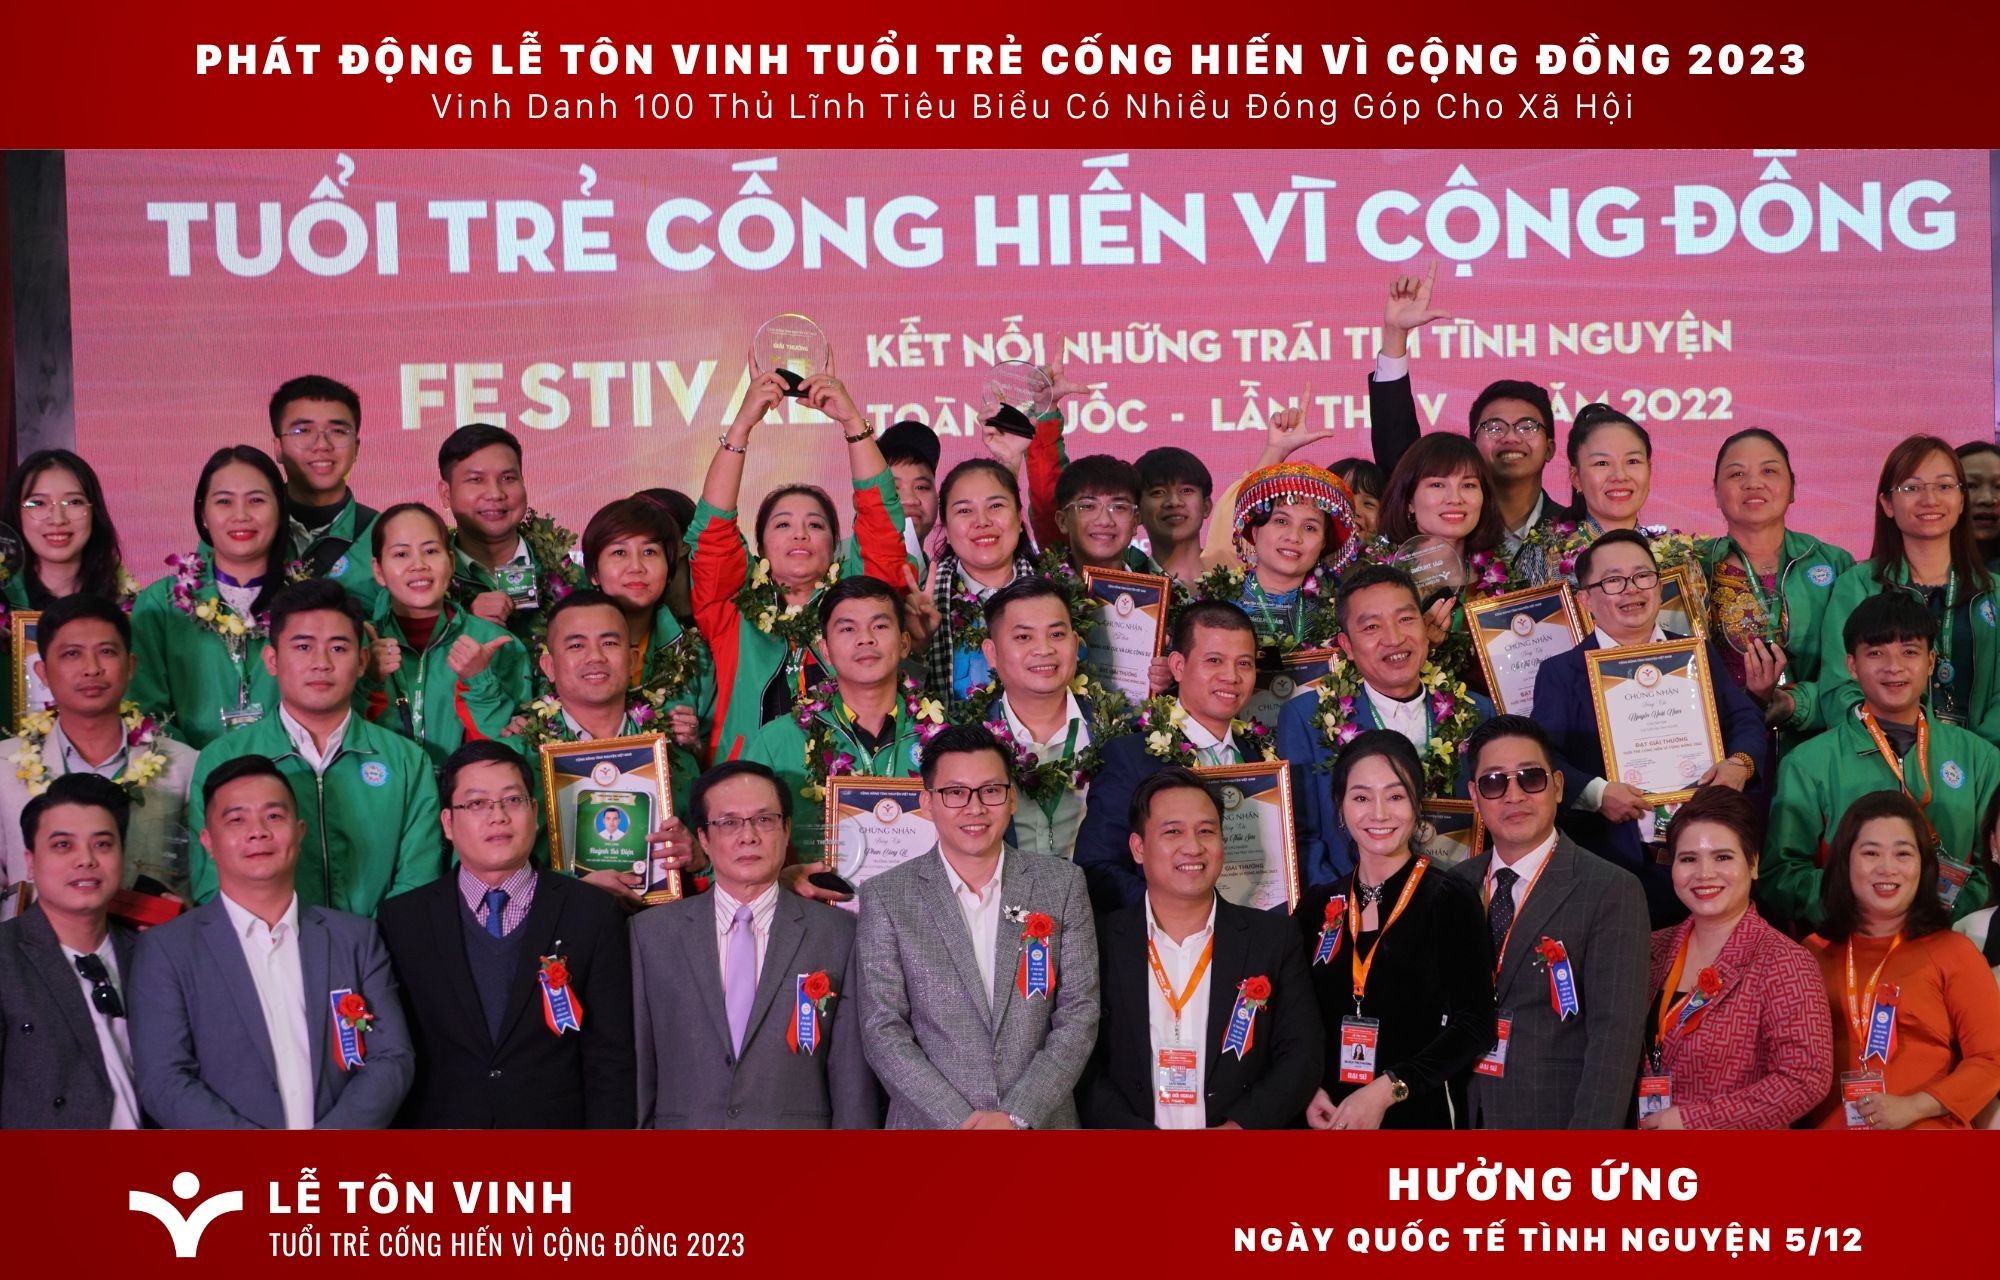 le-ton-vinh-tuoi-tre-cong-hien-vi-cong-dong-nam-2022-pld-1701771305.jpg